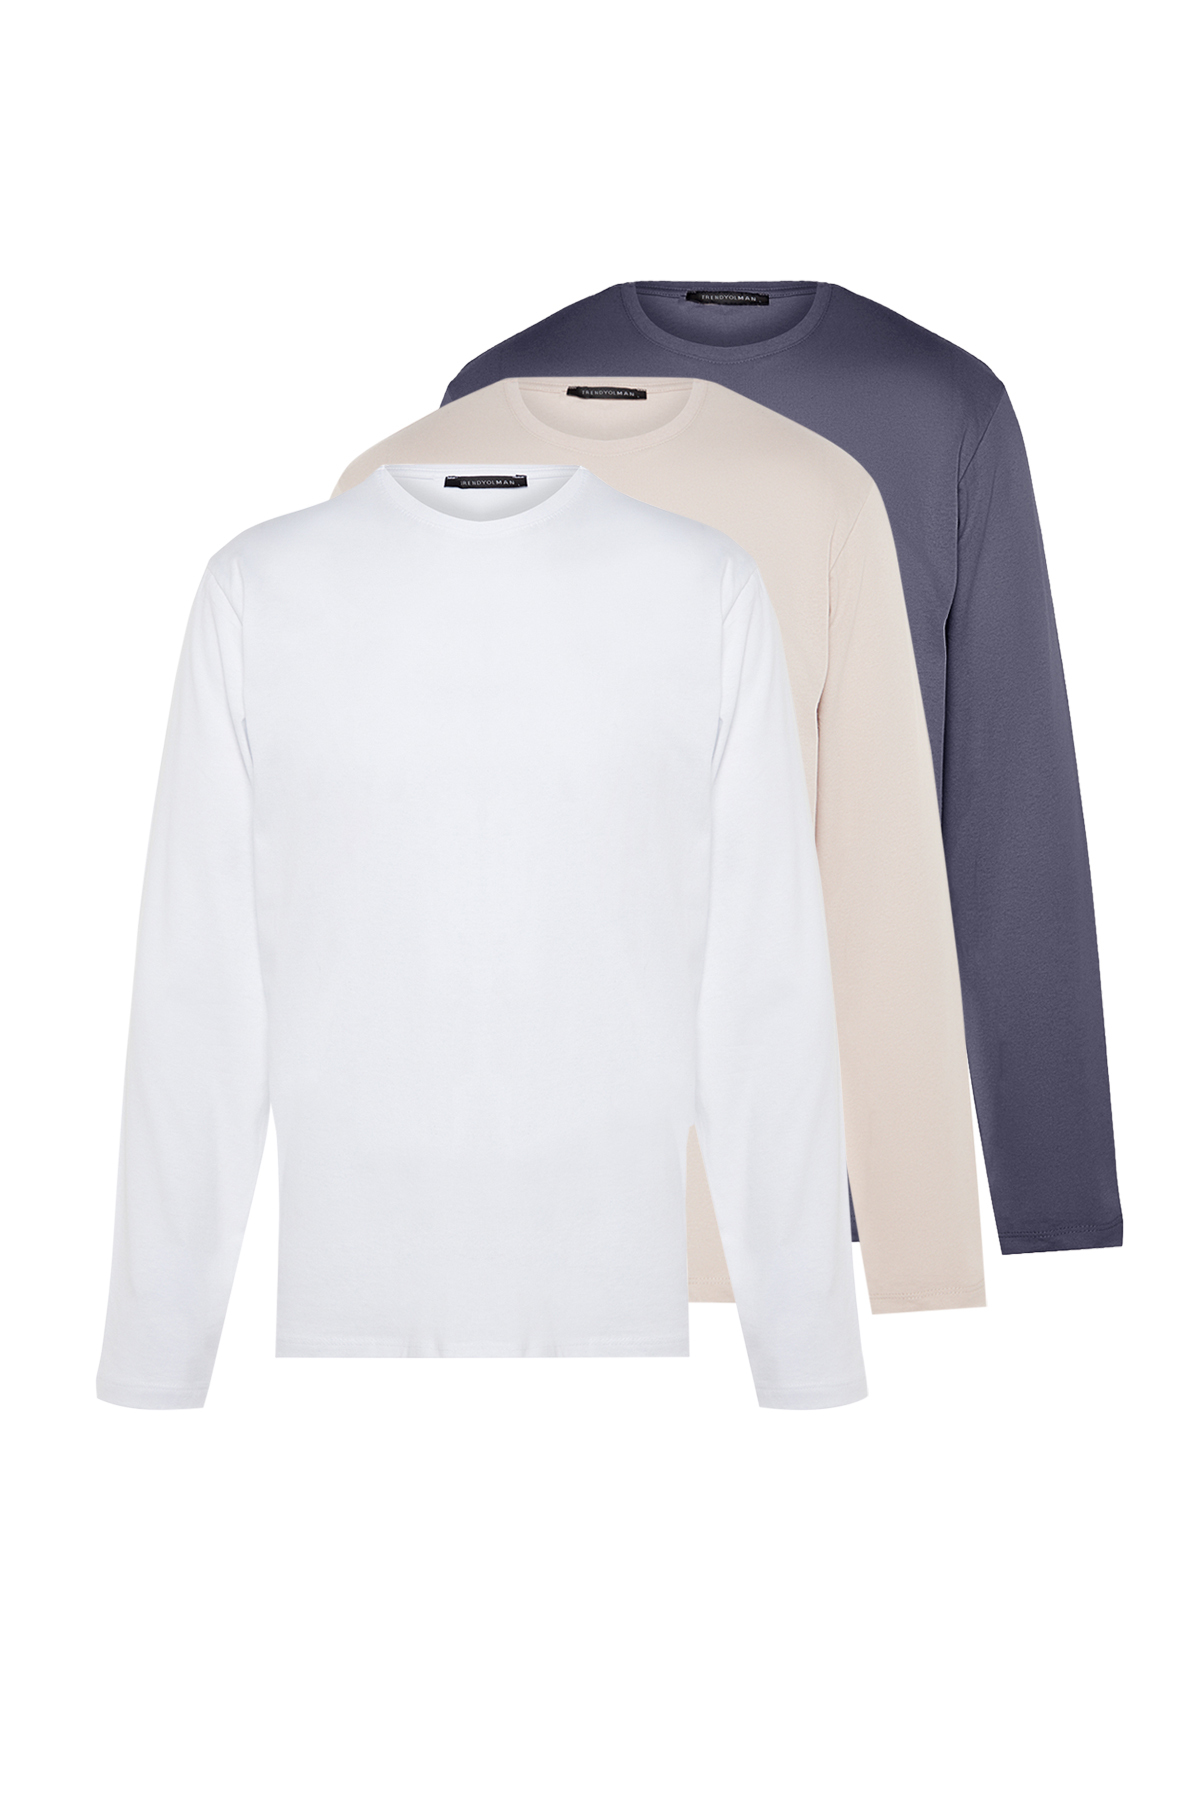 Trendyol Collection mit Trendyol aus Ärmeln langen - im mit 3er-Pack Dunkelgrau-beige-weißes Herren-Basic-T-Shirt schmalem/schmalem Schnitt Baumwolle 100 